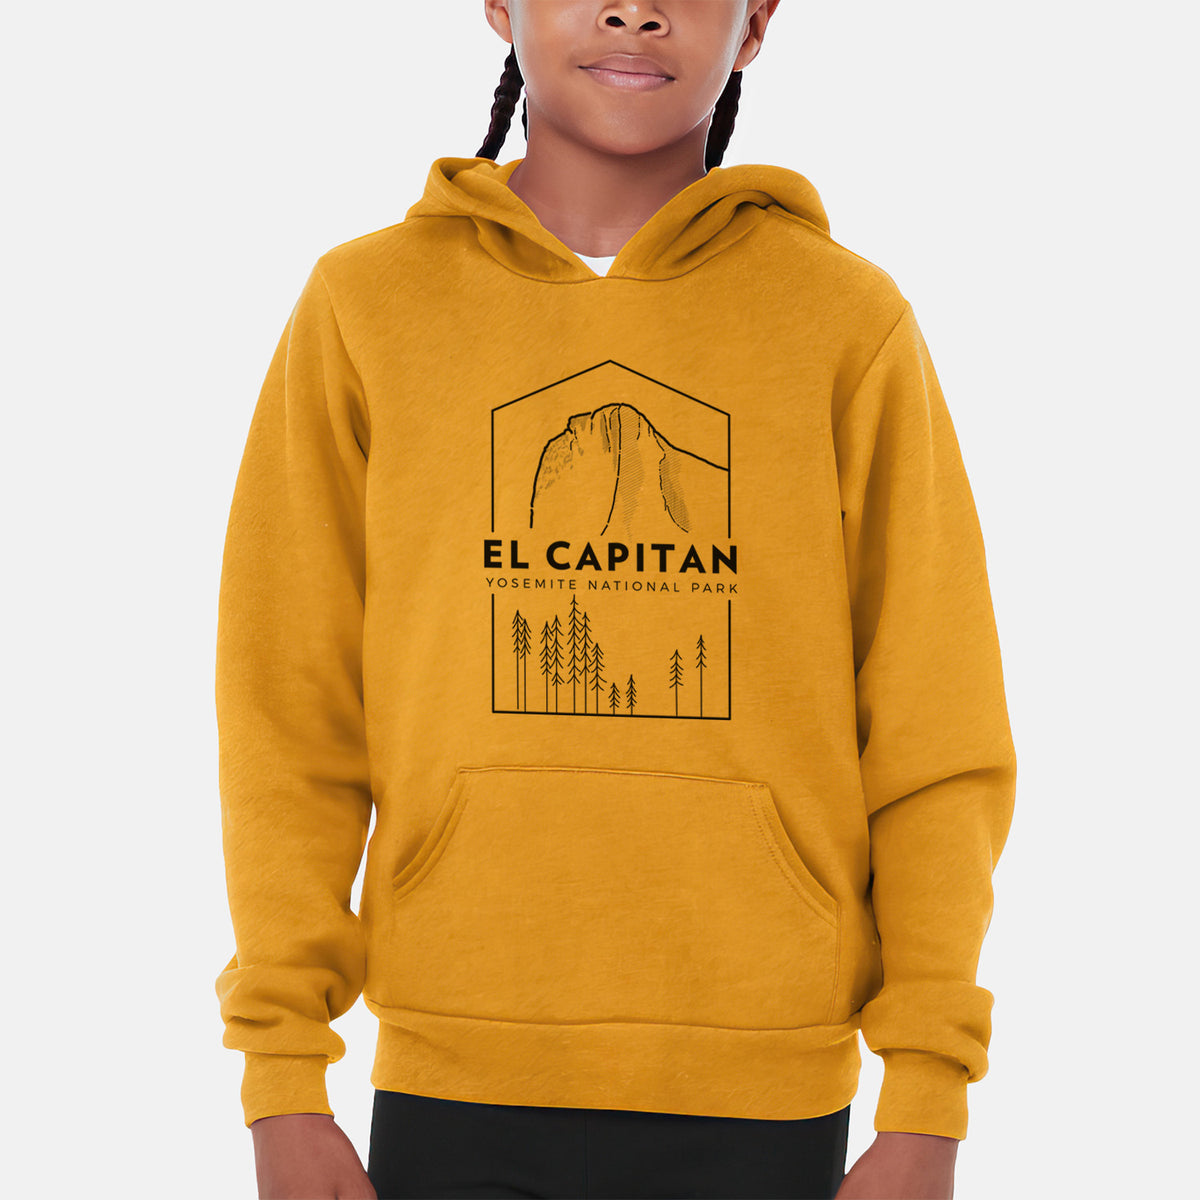 El Capitan - Yosemite National Park - Youth Hoodie Sweatshirt